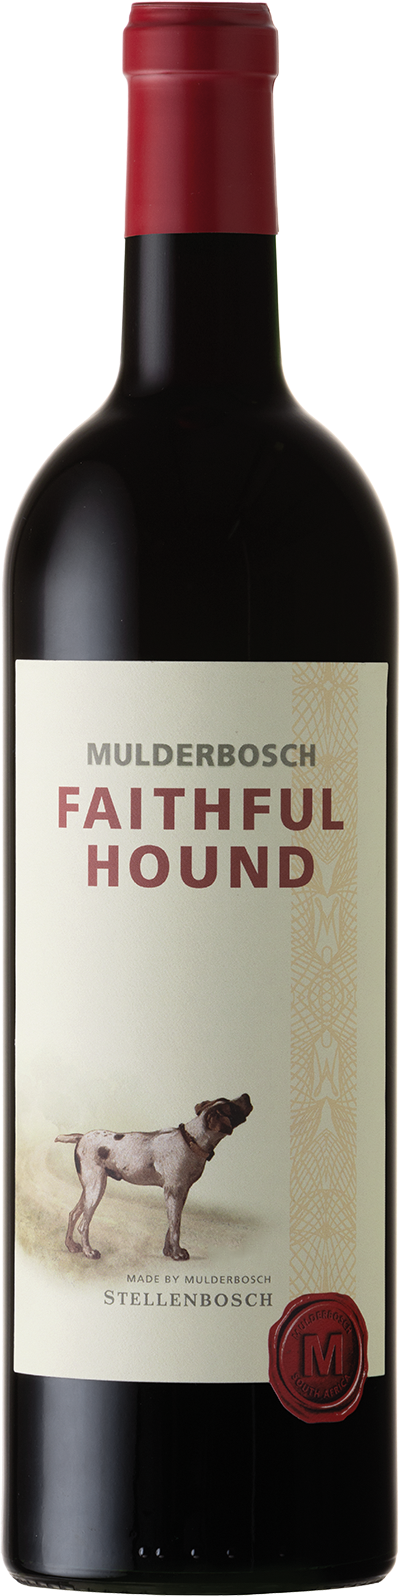 Faithful Hound Mulderbosch